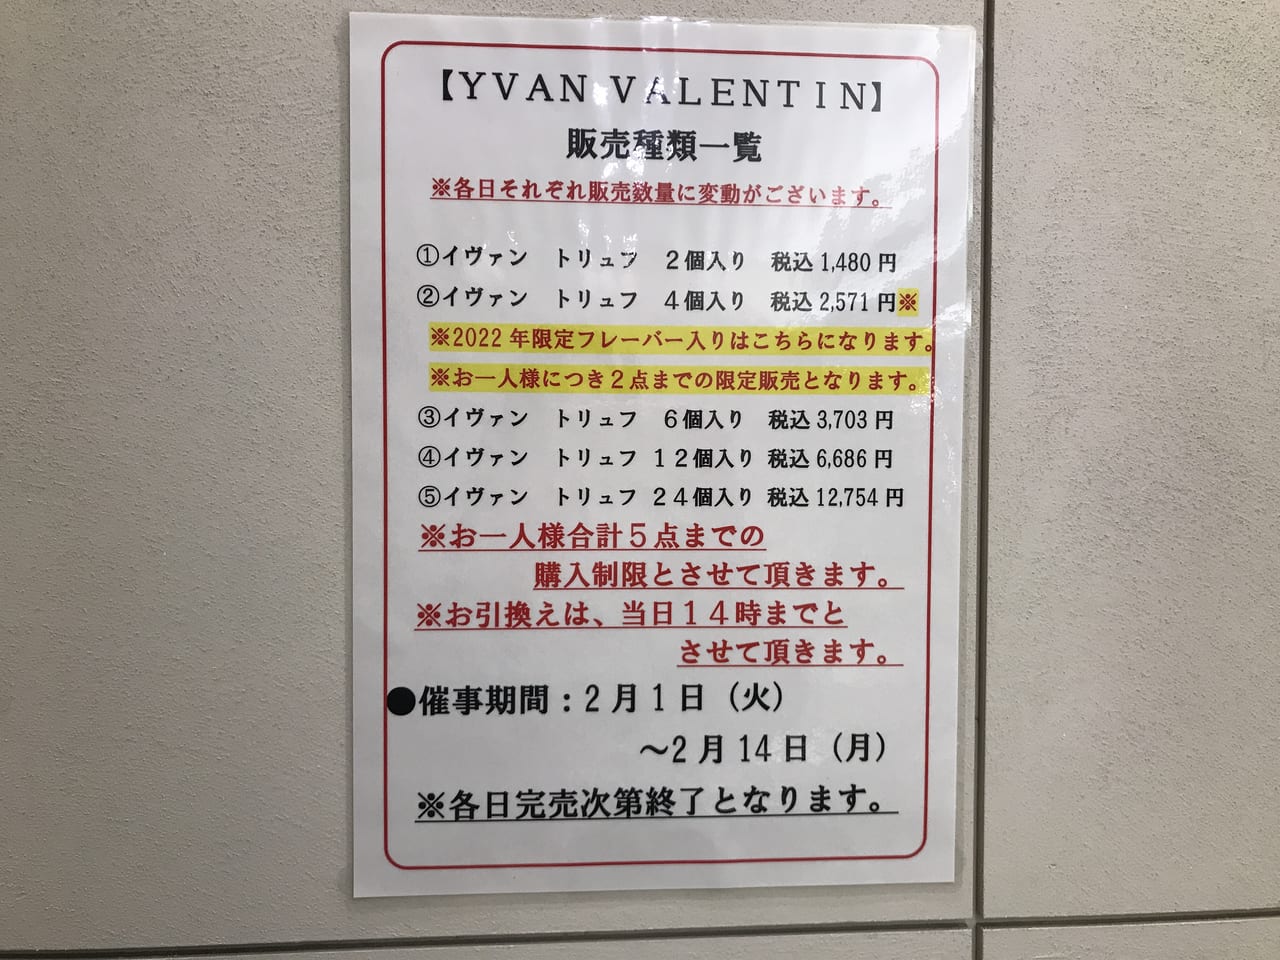 世田谷区2022年ヴァレンタインのYVAN VALENTINEイヴァン・ヴァレンティン期間限定ショップが玉川高島屋に出店中です。